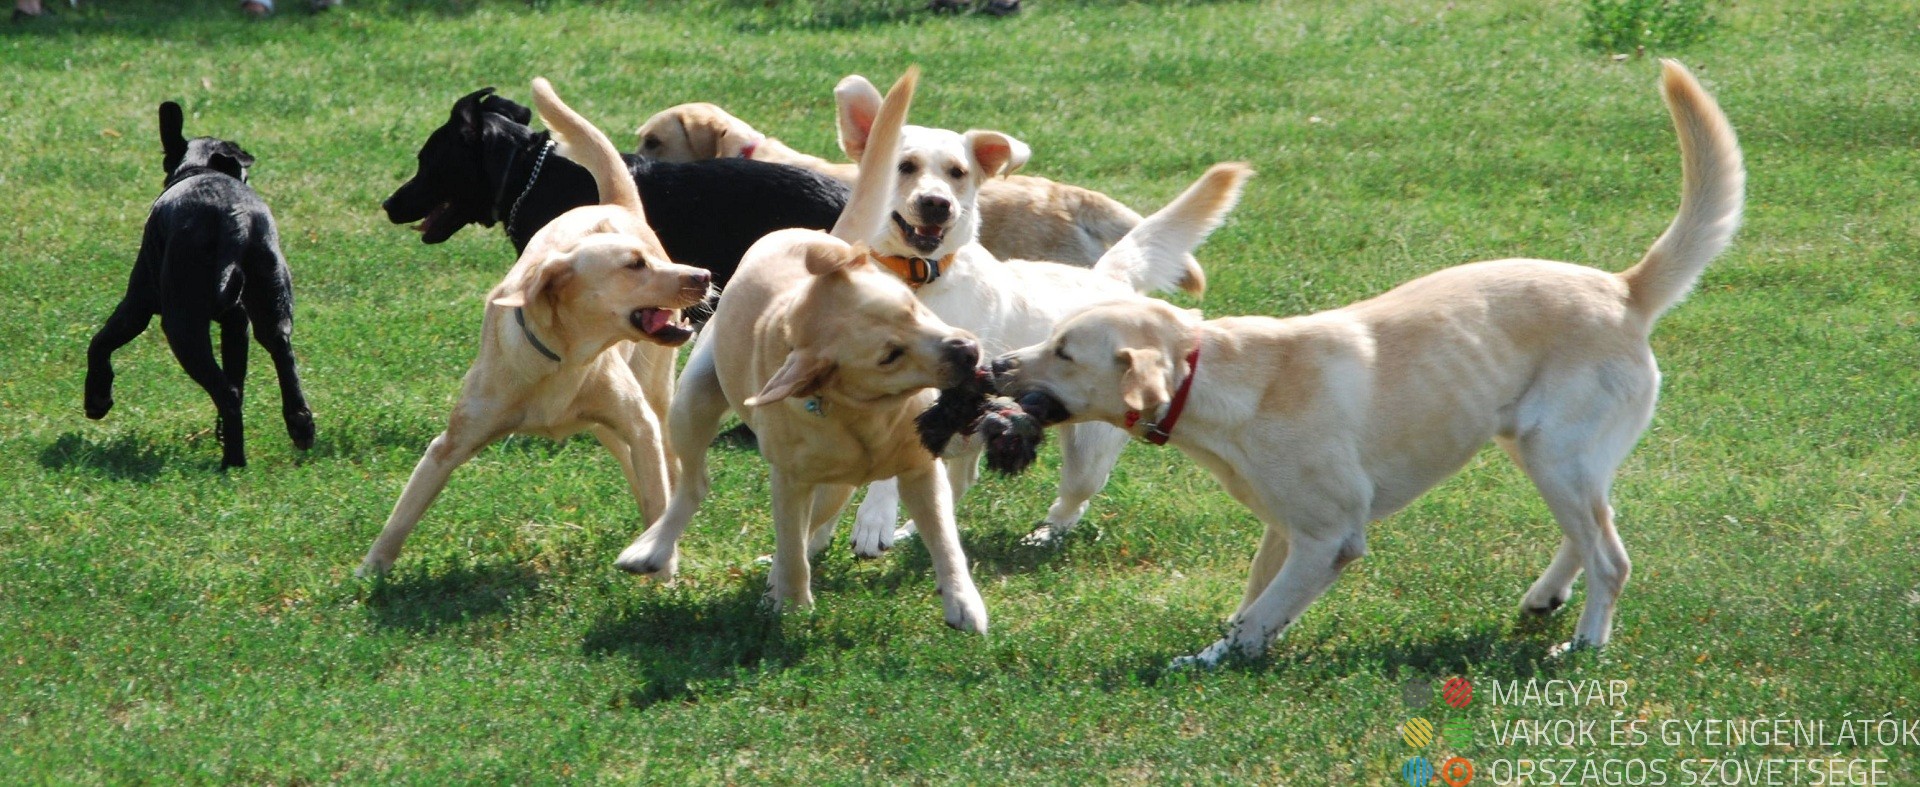 Fiatal kutyusok játszanak egymással